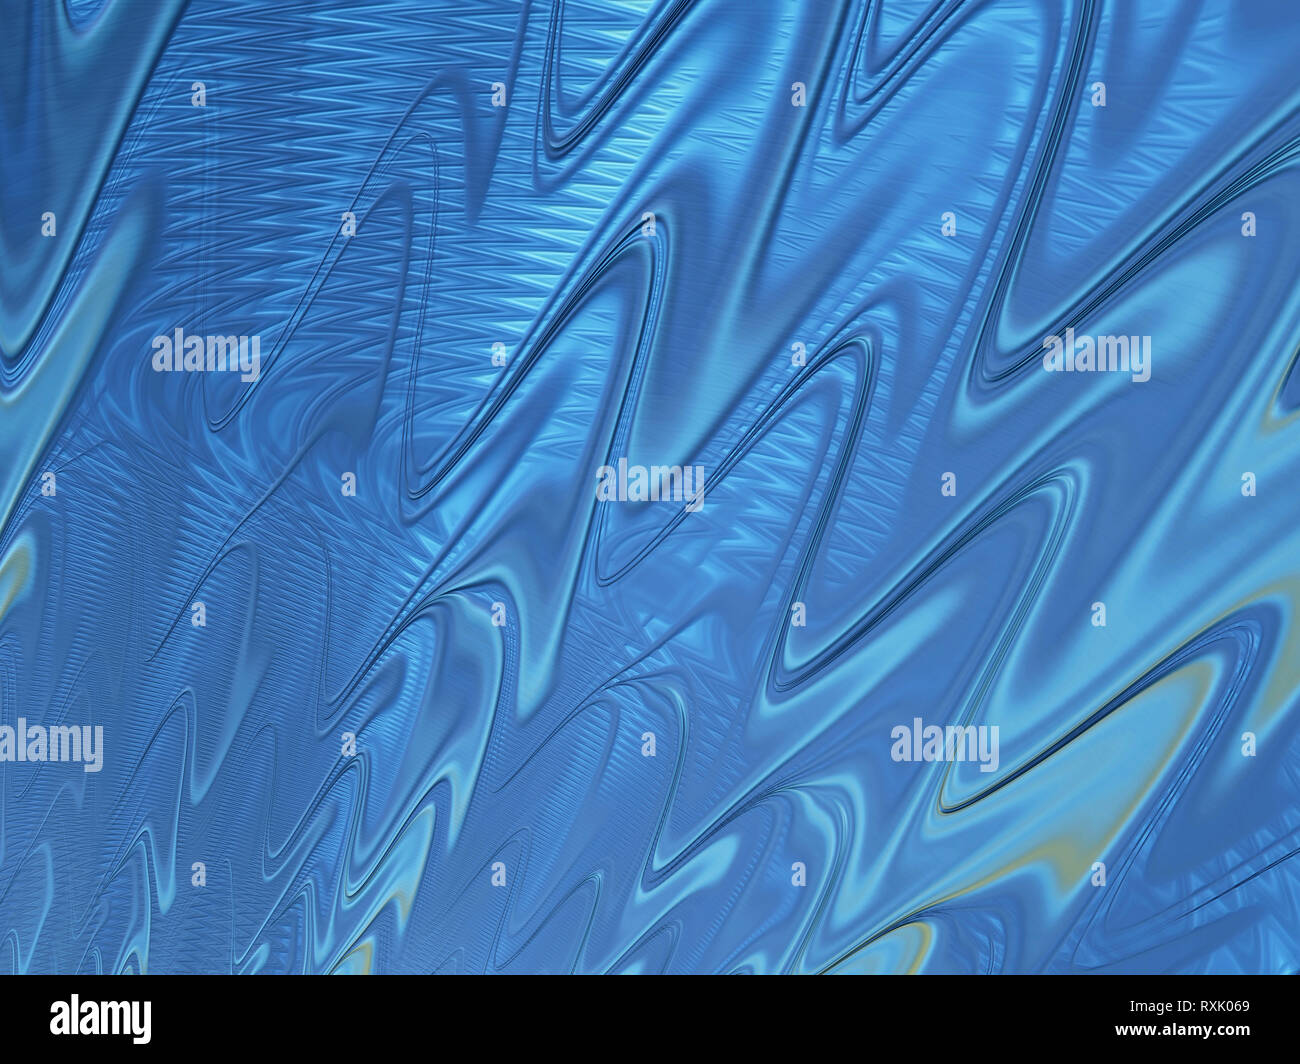 Fraktale abstrakte strukturierten Hintergrund mit blauen glatte wellenförmige Muster Stockfoto